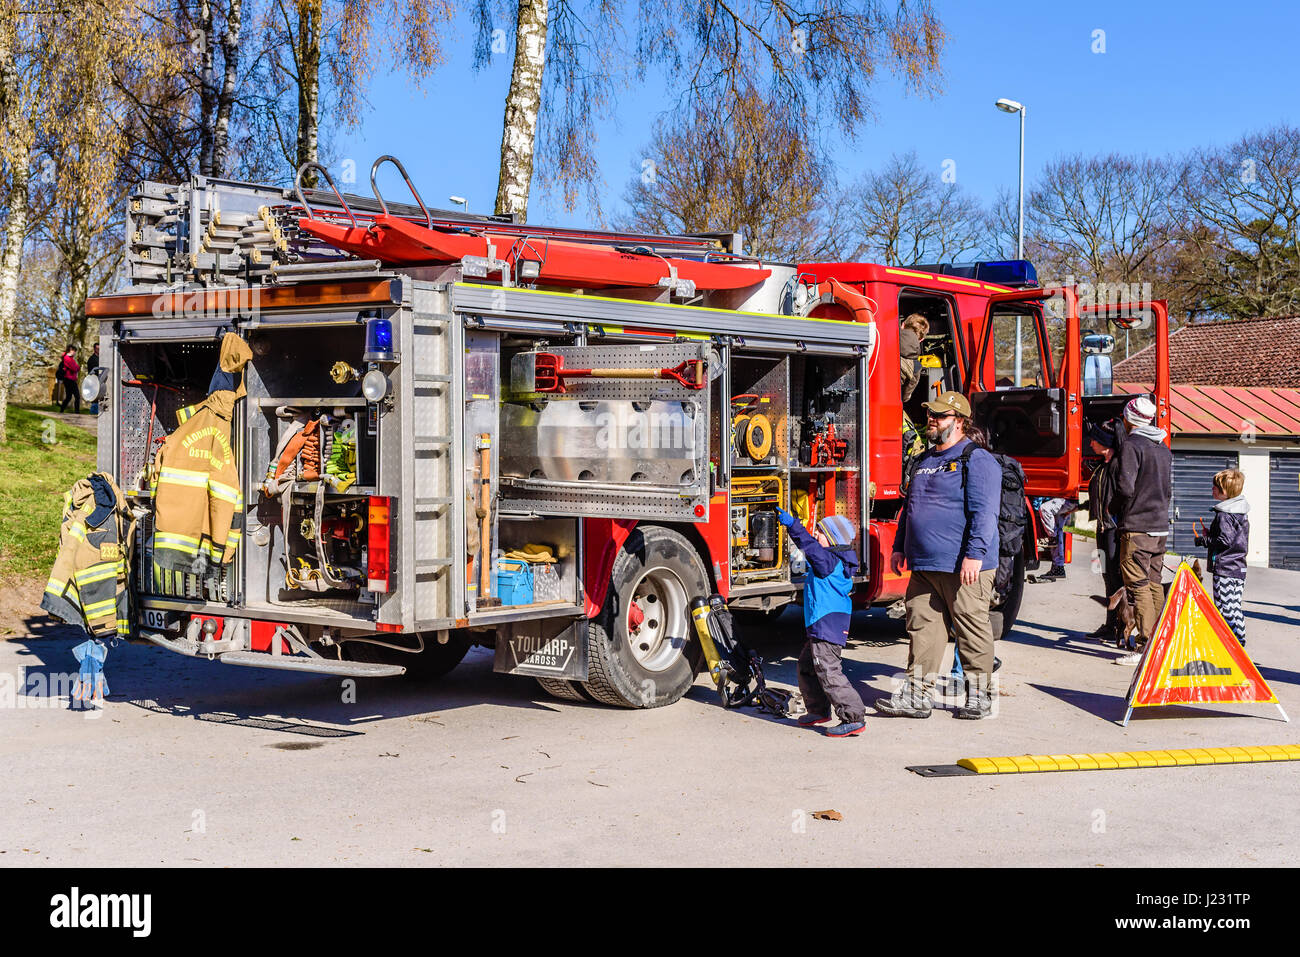 Hoby Brakne, Schweden - 22. April 2017: Dokumentation der öffentlichen Feuer LKW Präsentation. Personen suchen in LKW. Kleiner Junge zeigt auf Ausrüstung, Erwachsene b Stockfoto